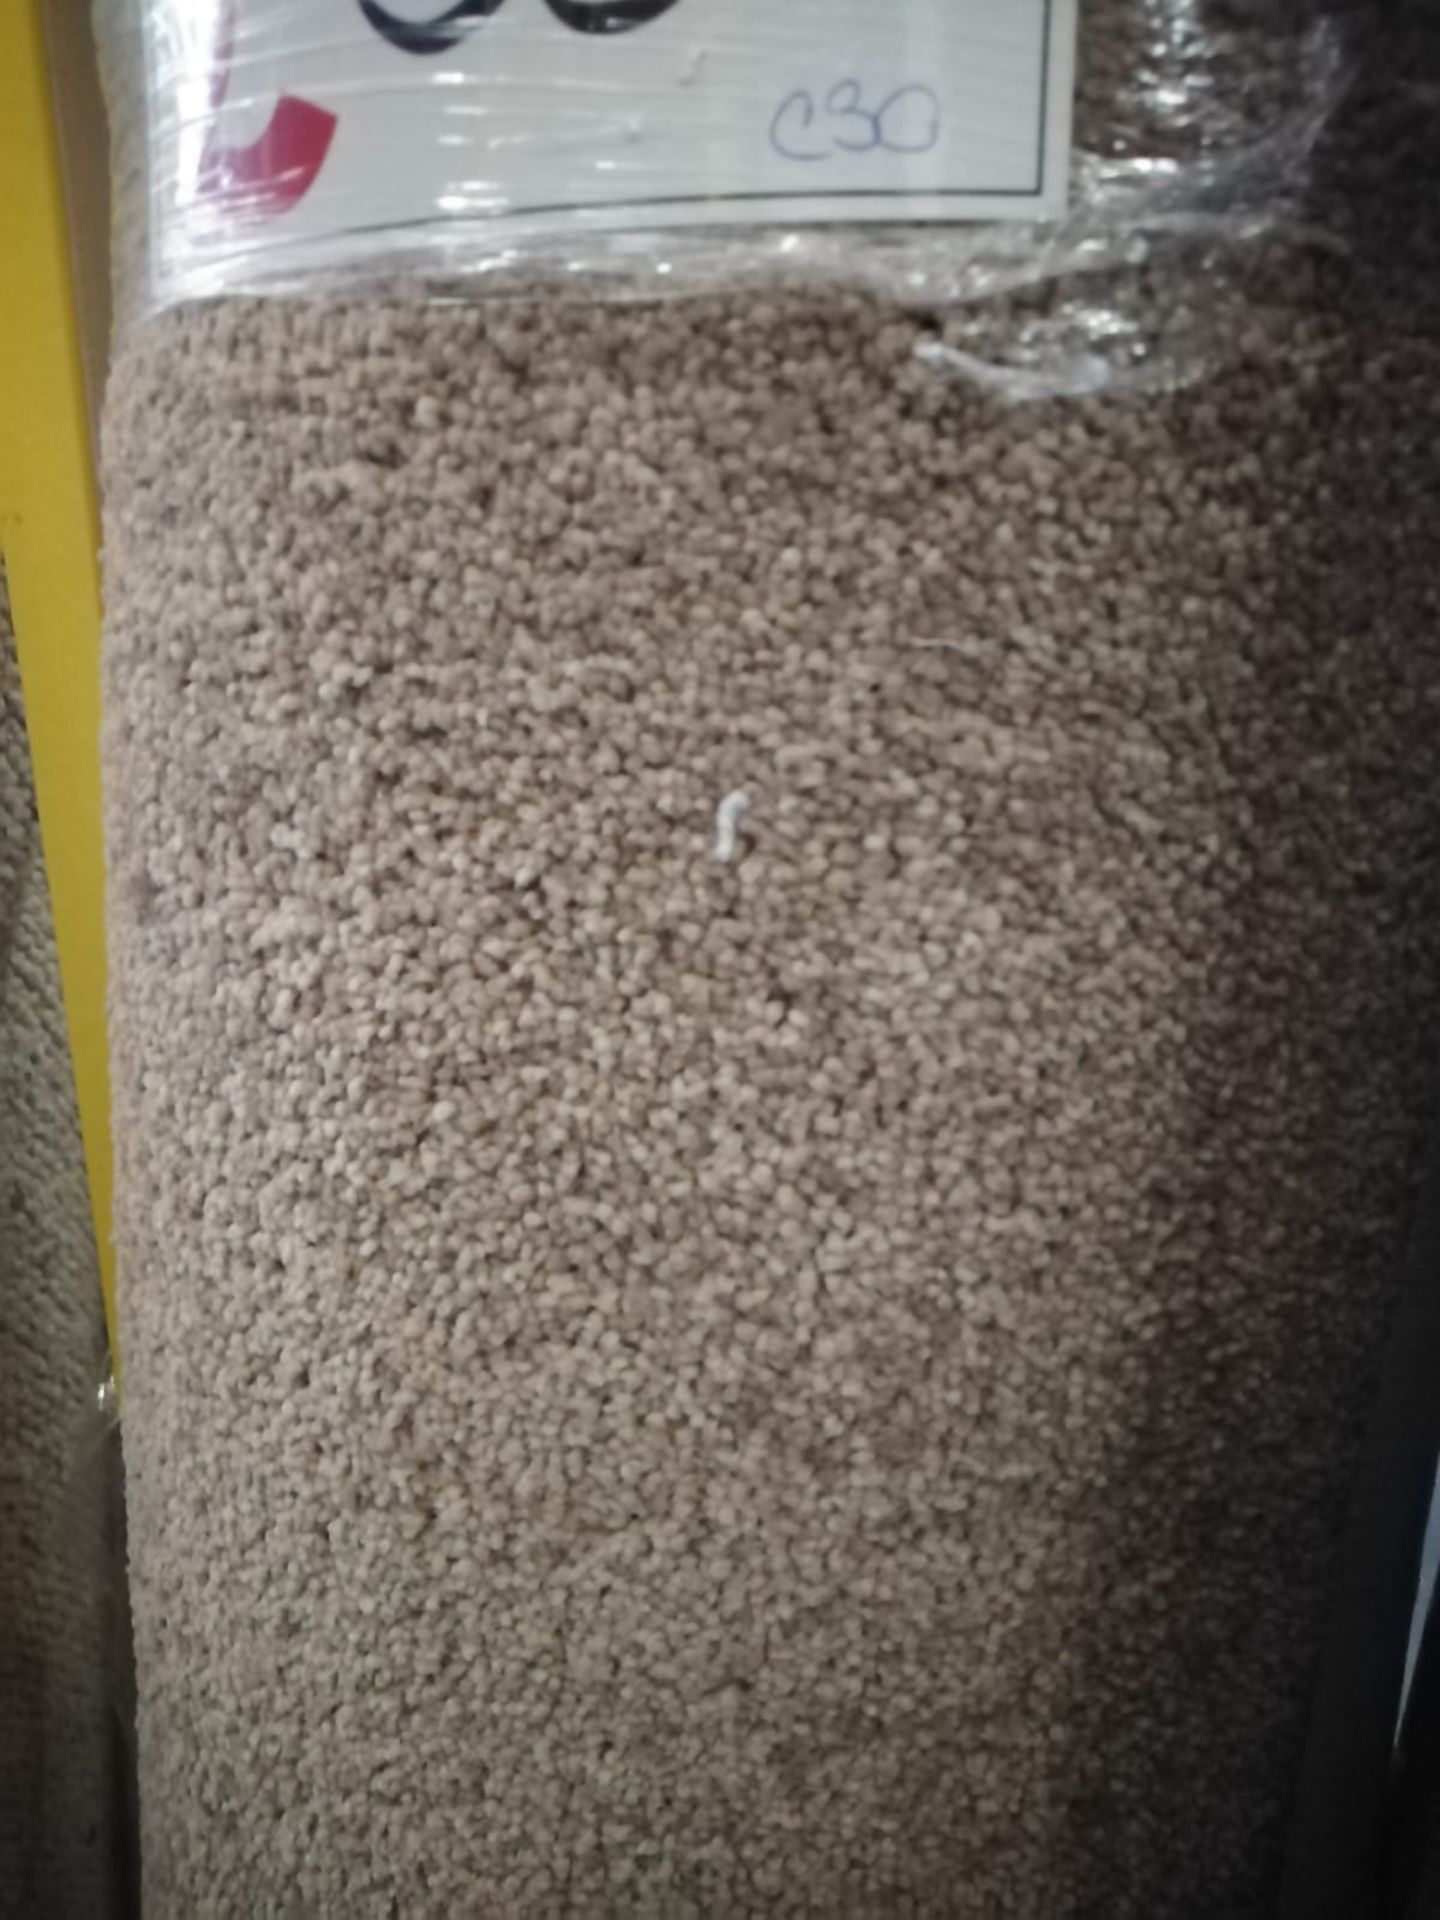 Satisfaction Marble Polypropylene Carpet 11'8X13' (3.6X4M) - Image 2 of 2